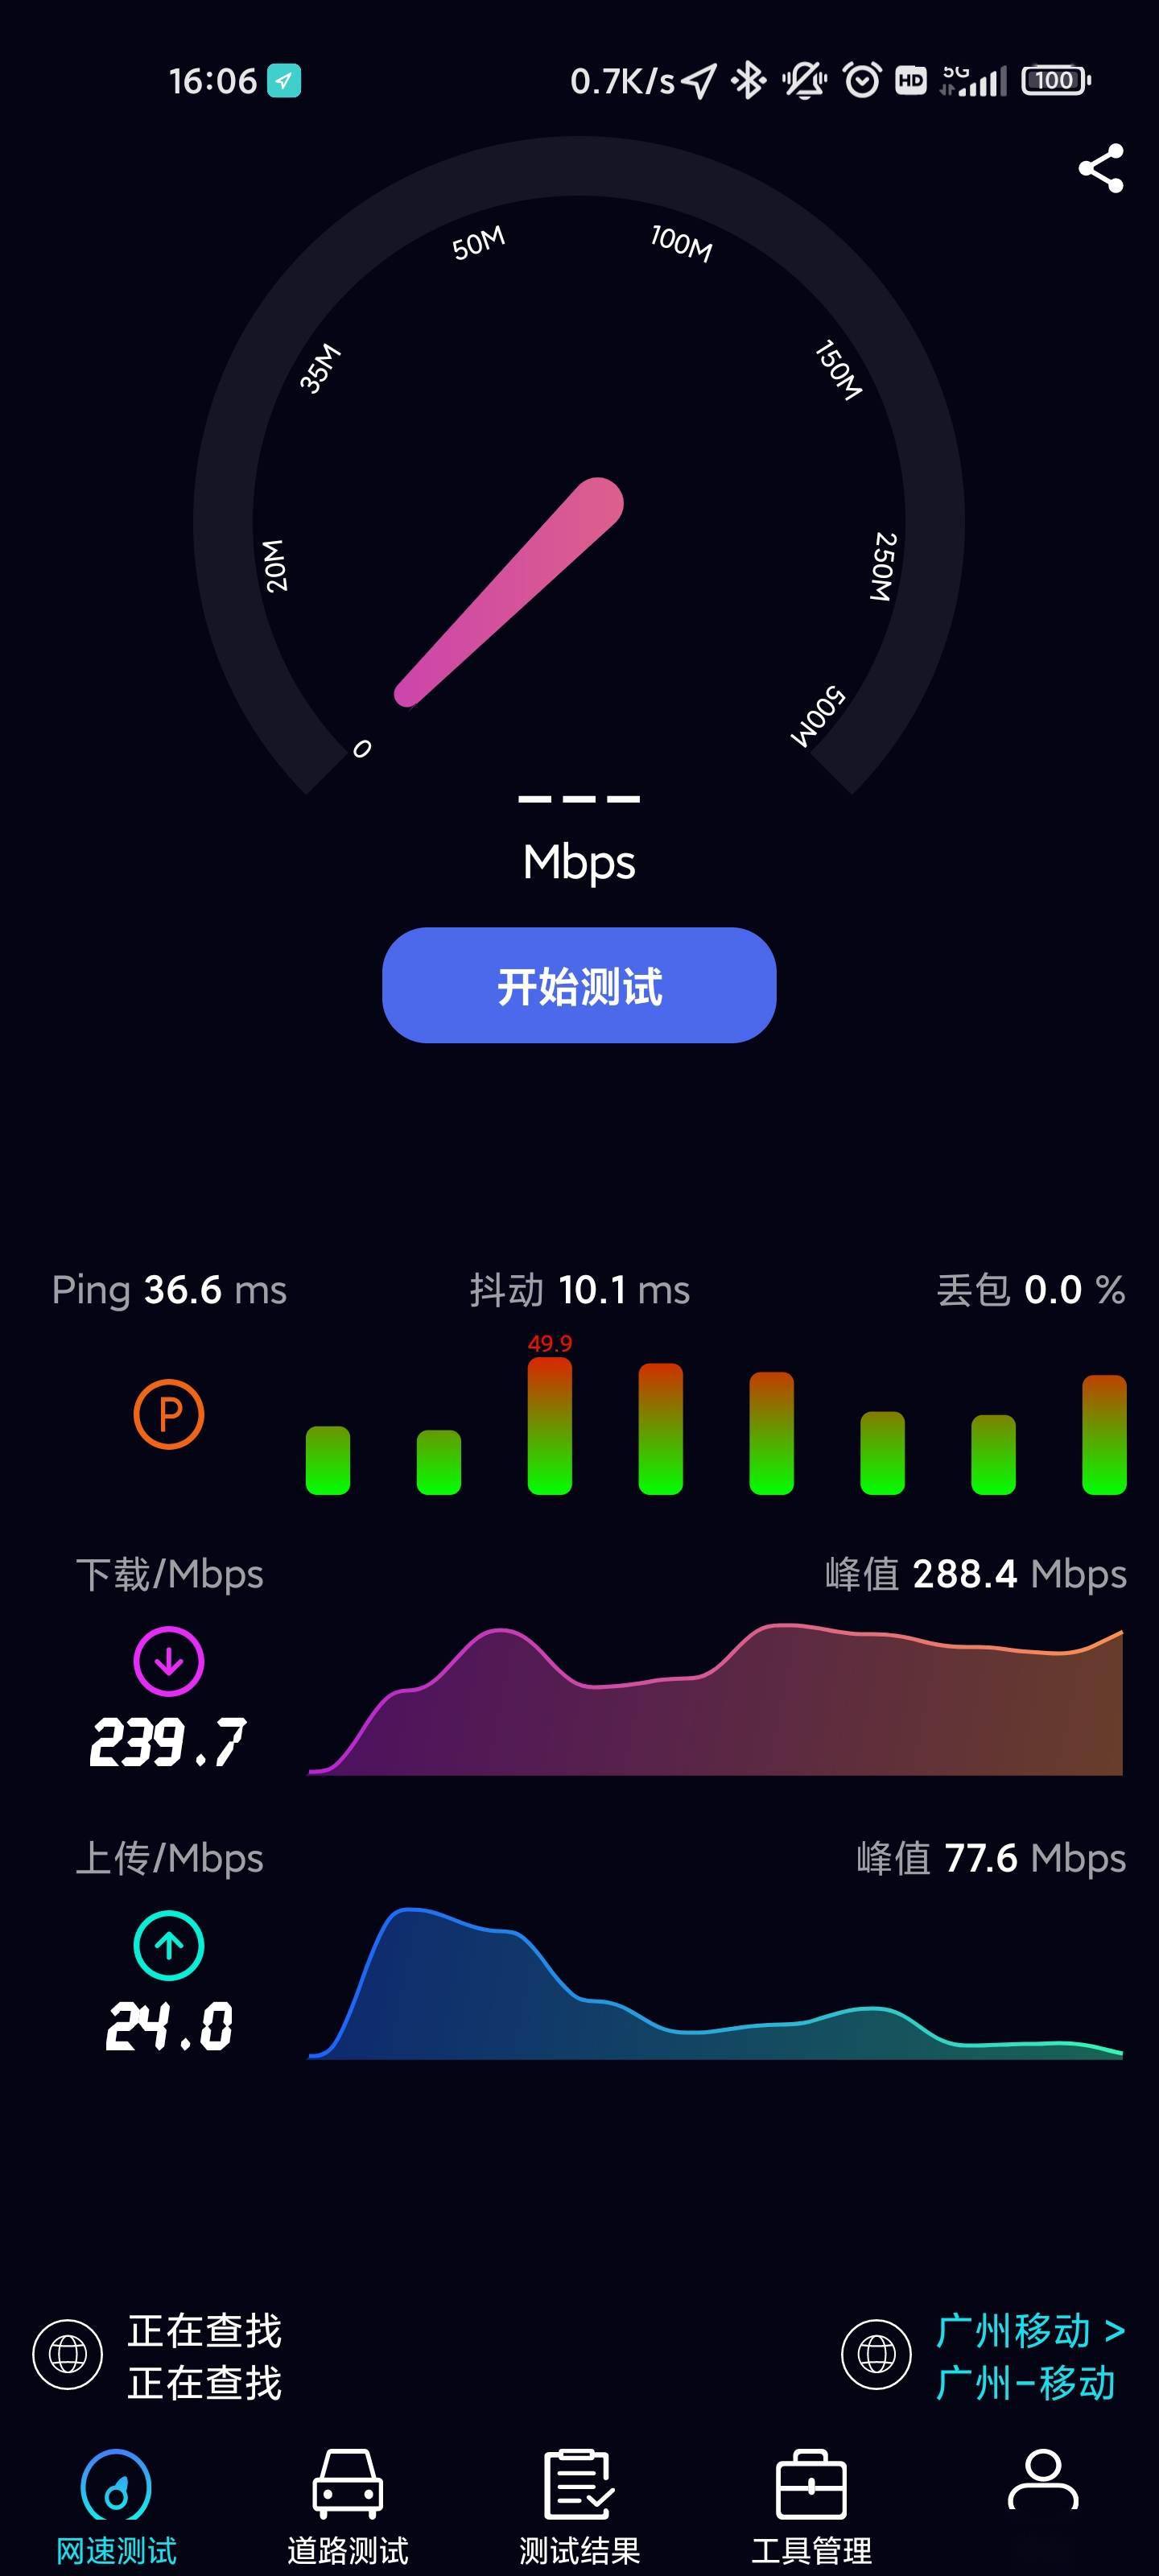 北京移动 5G 网络直播：流畅画面与无延迟传输，带来全新观赛体验  第5张